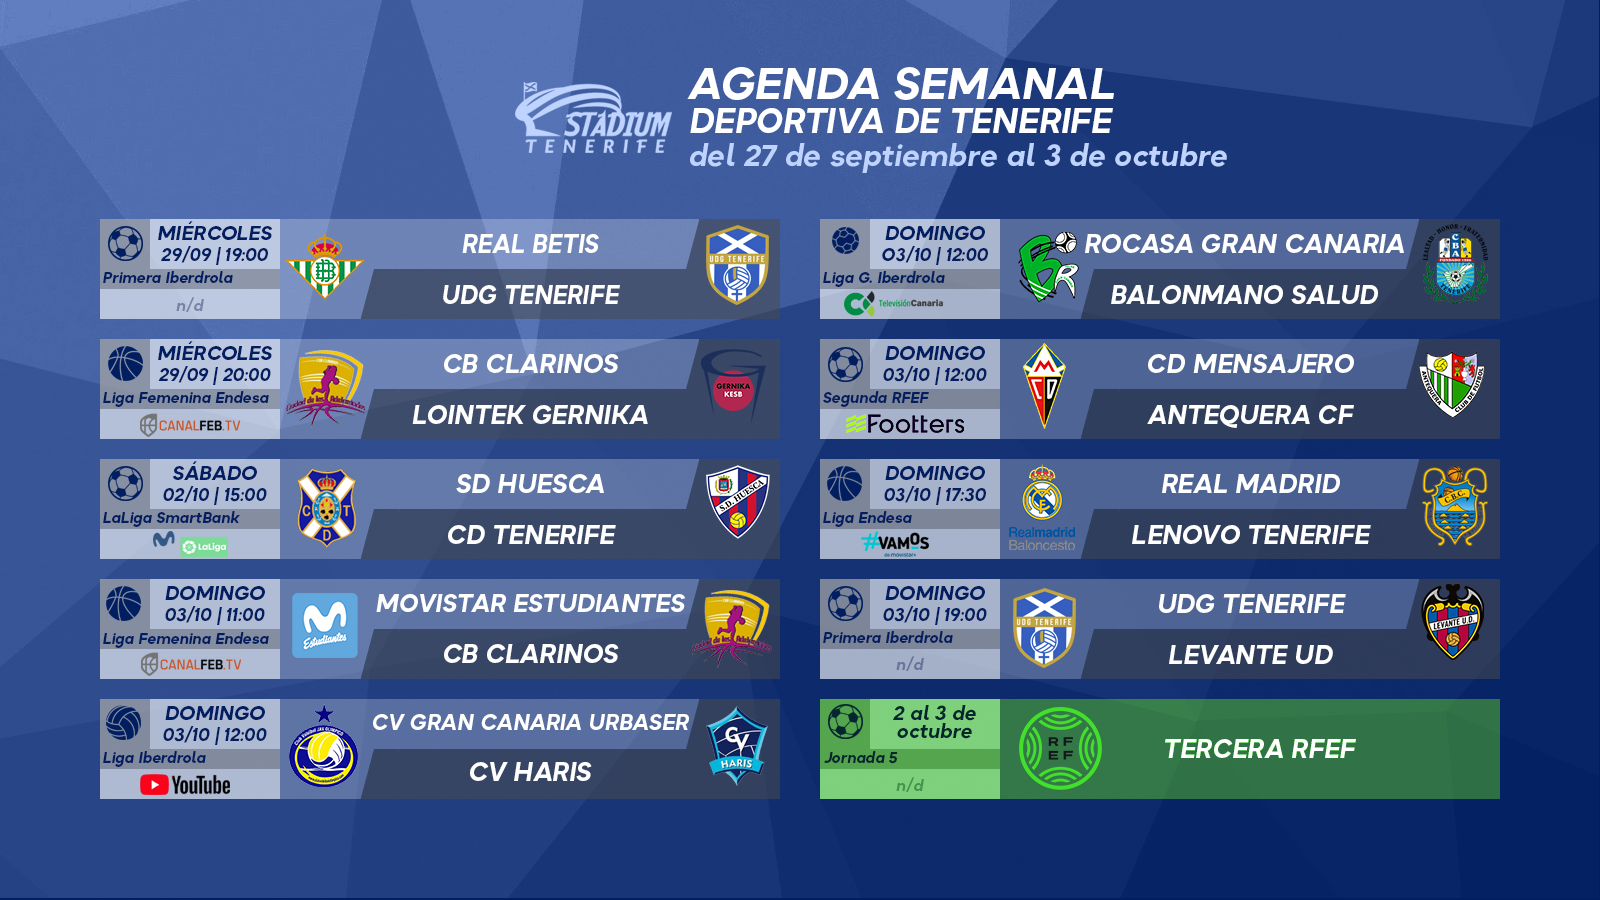 Agenda Semanal Deportiva de Tenerife (27 de septiembre al 3 de octubre de 2021)